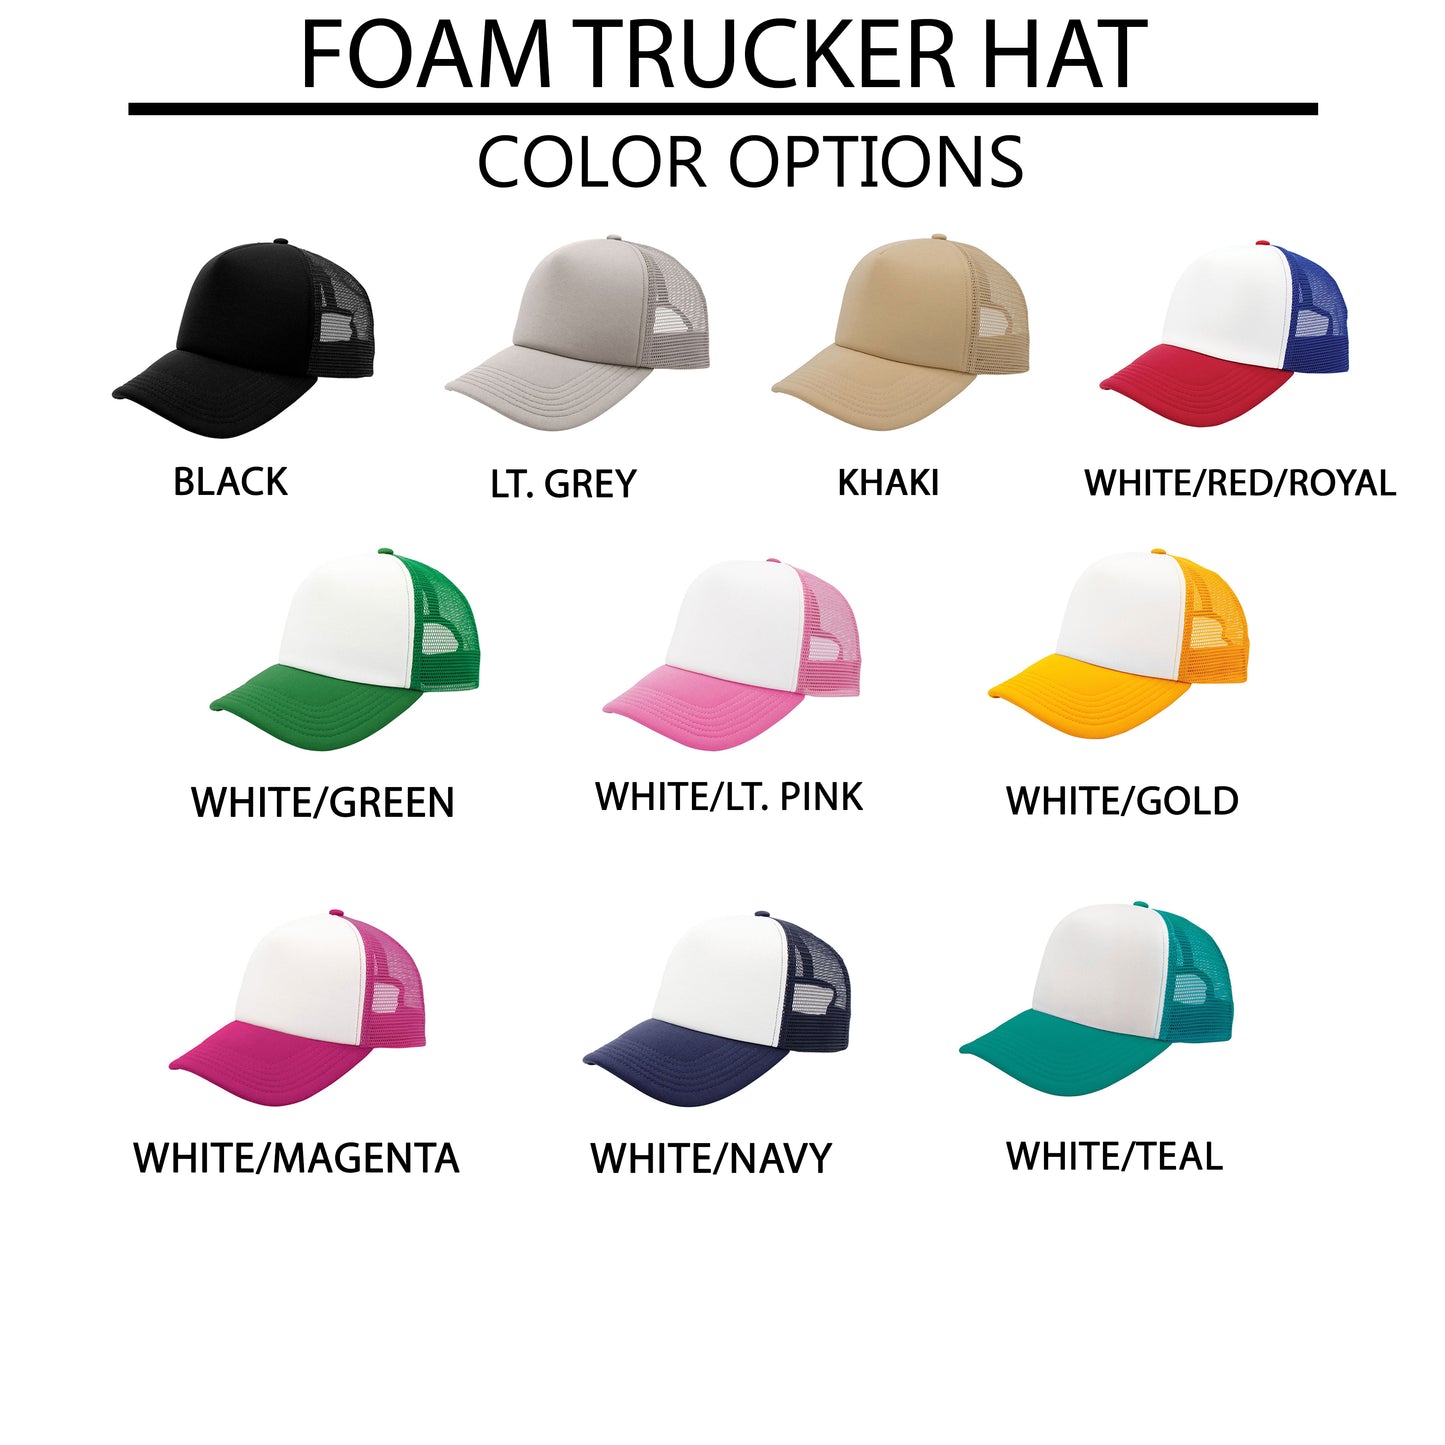 Love Like Jesus Cursive Heart | Foam Trucker Hat